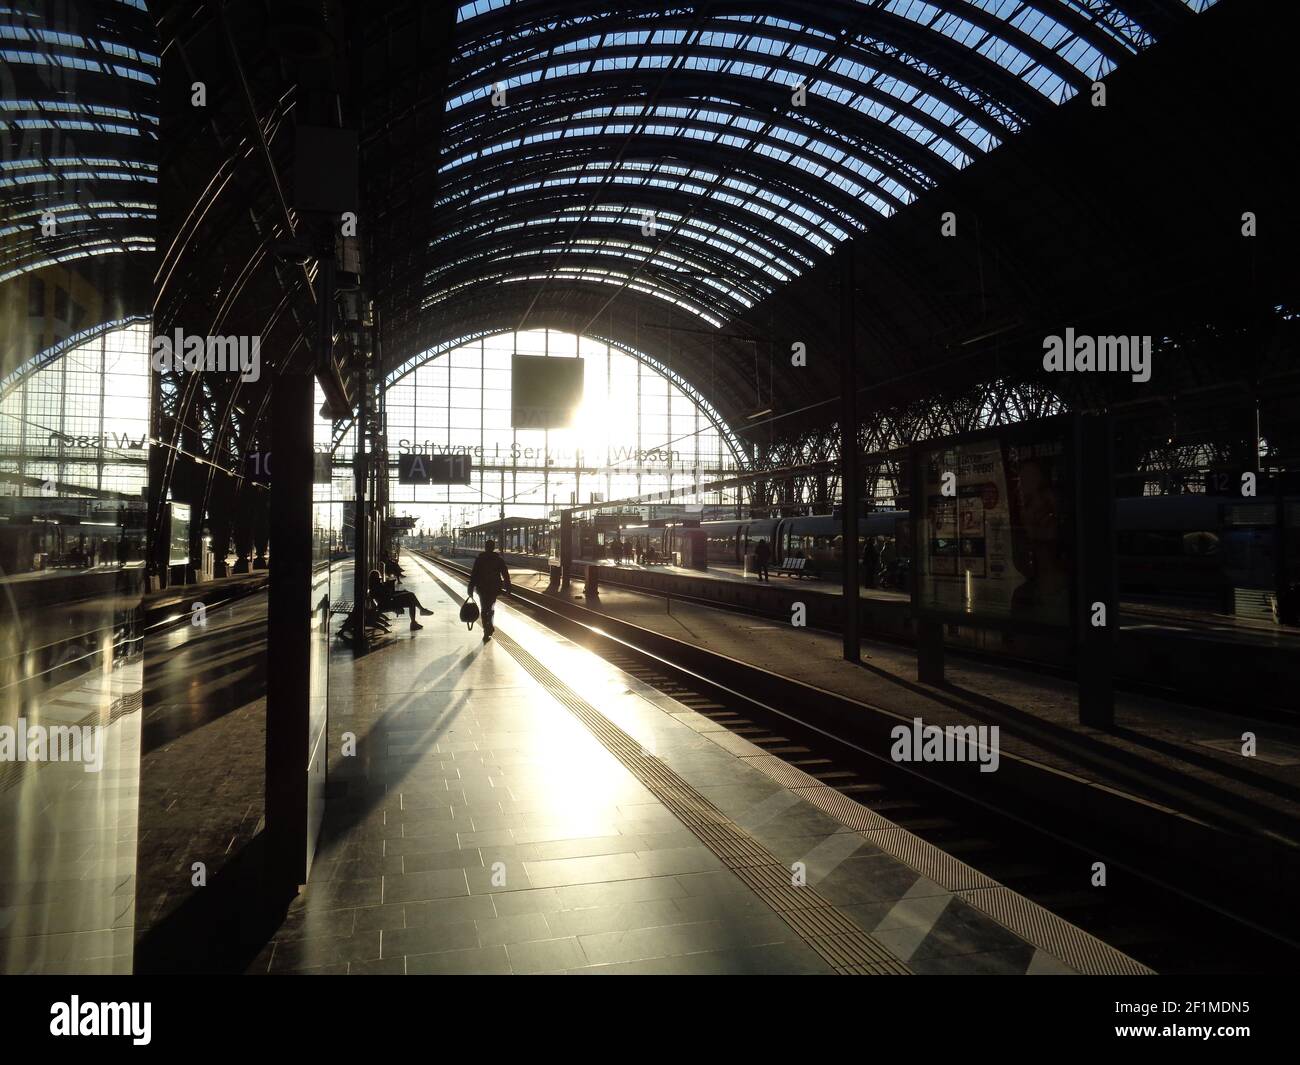 FRANKFURT, DEUTSCHLAND - 28. Feb 2021: Gegenlichteindruck auf dem Bahnsteig, Frankfurter Hauptbahnhof. Die wichtigste Drehscheibe im Schienenverkehr in Deutschland. Stockfoto